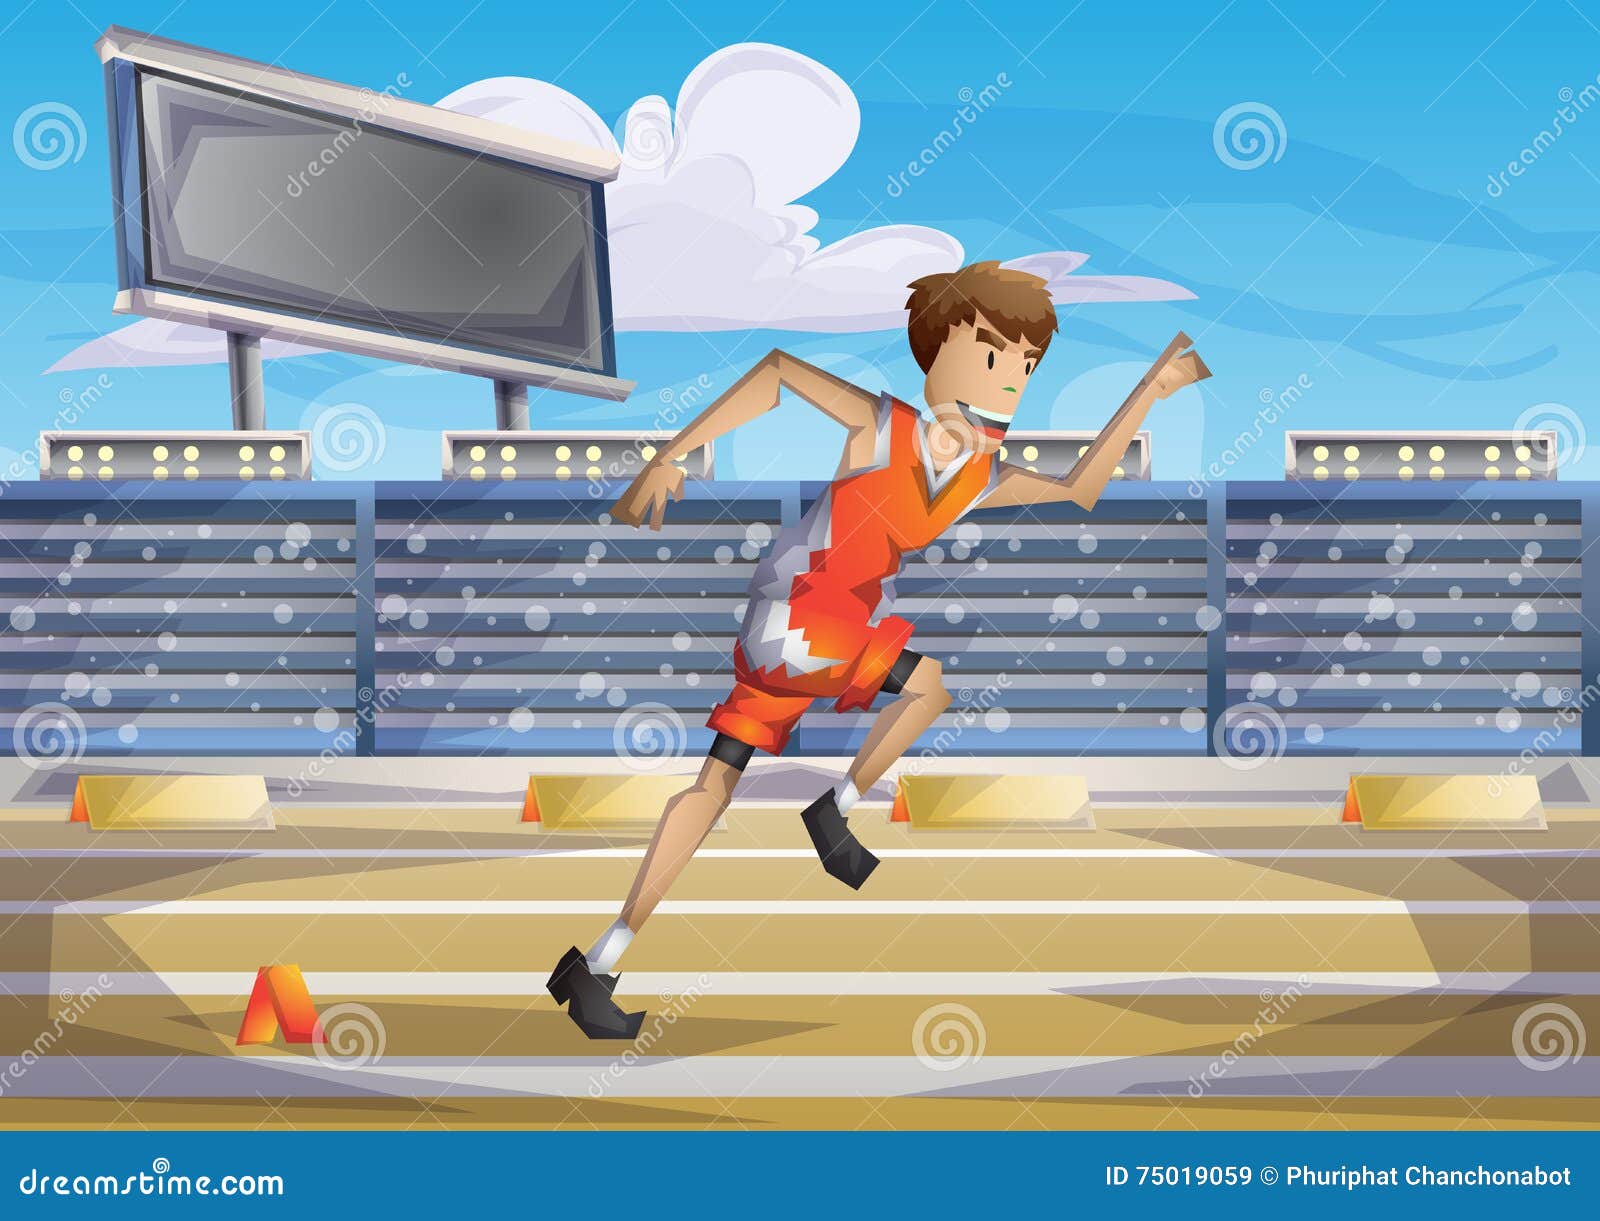 Cartoon Running Track Stock Illustrations – 2,665 Cartoon Running Track  Stock Illustrations, Vectors & Clipart - Dreamstime